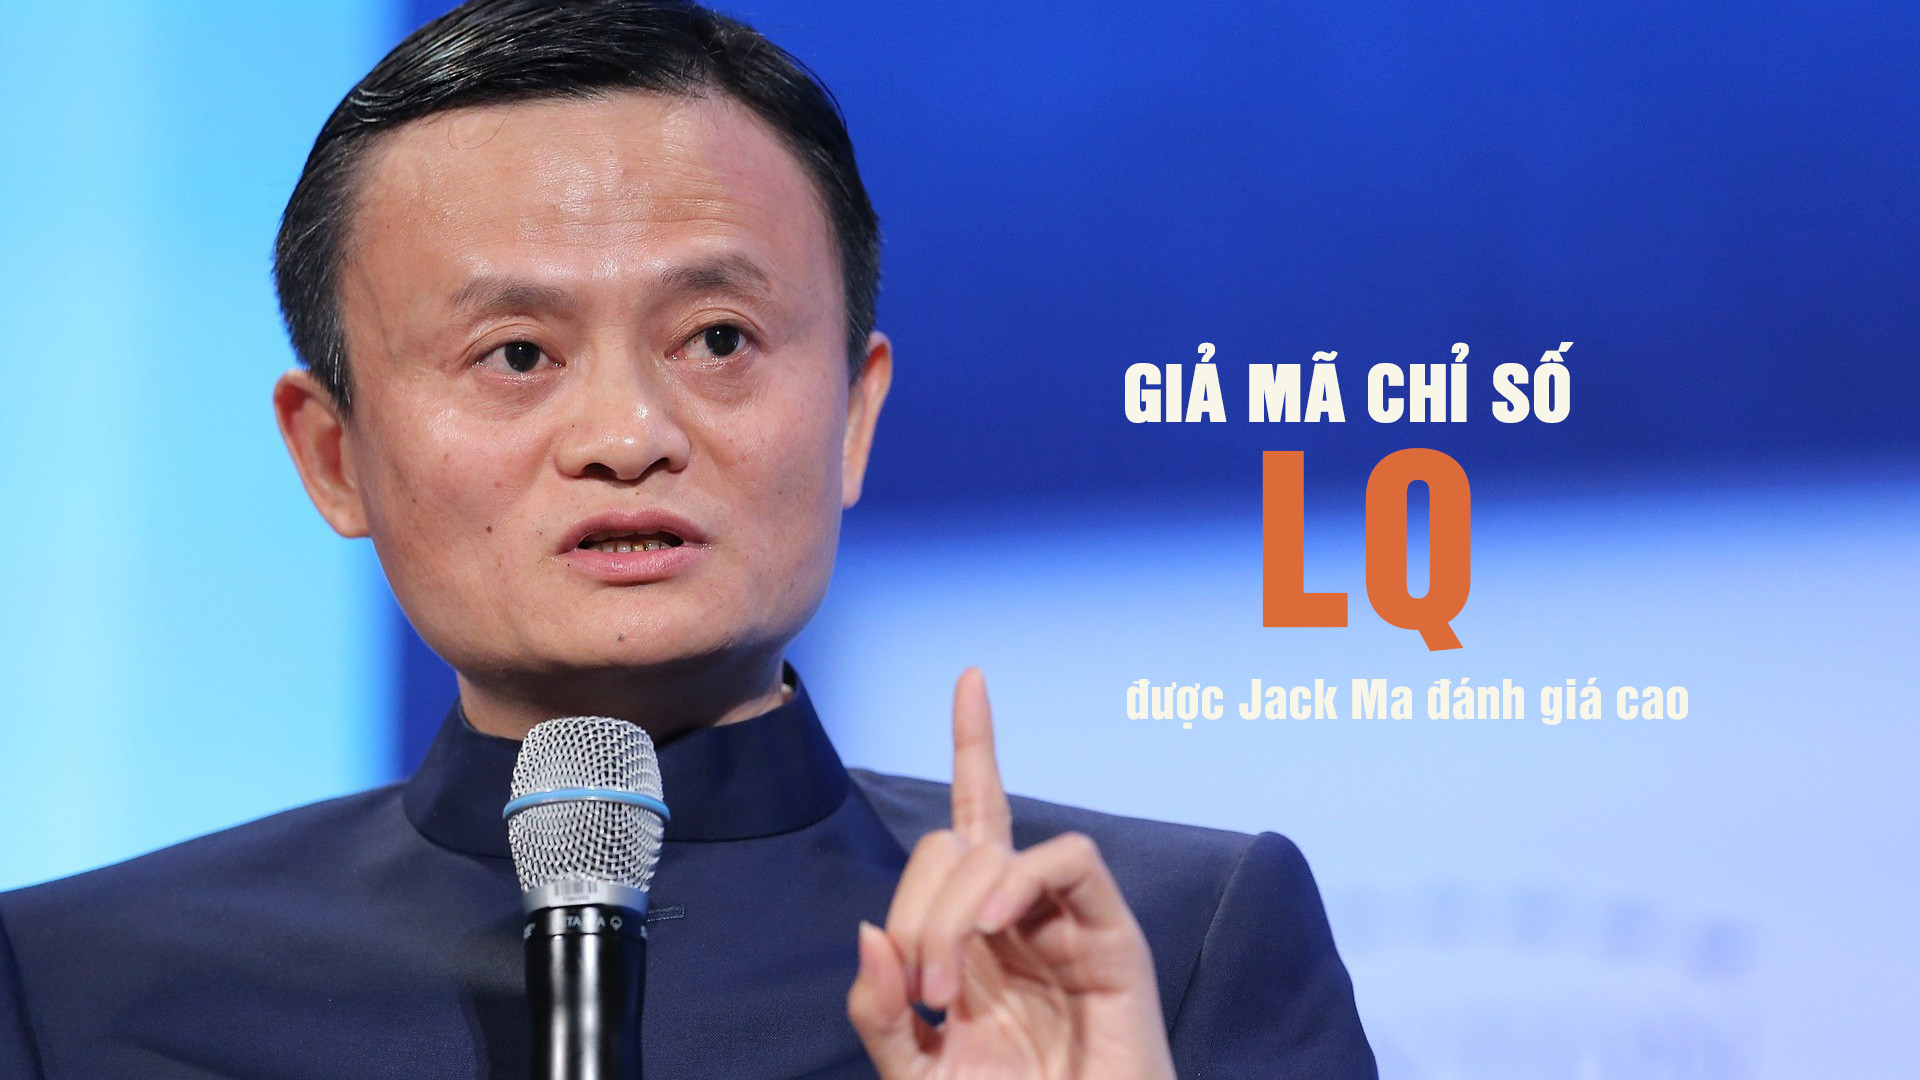 Giải mã chỉ số LQ được Jack Ma đánh giá cao